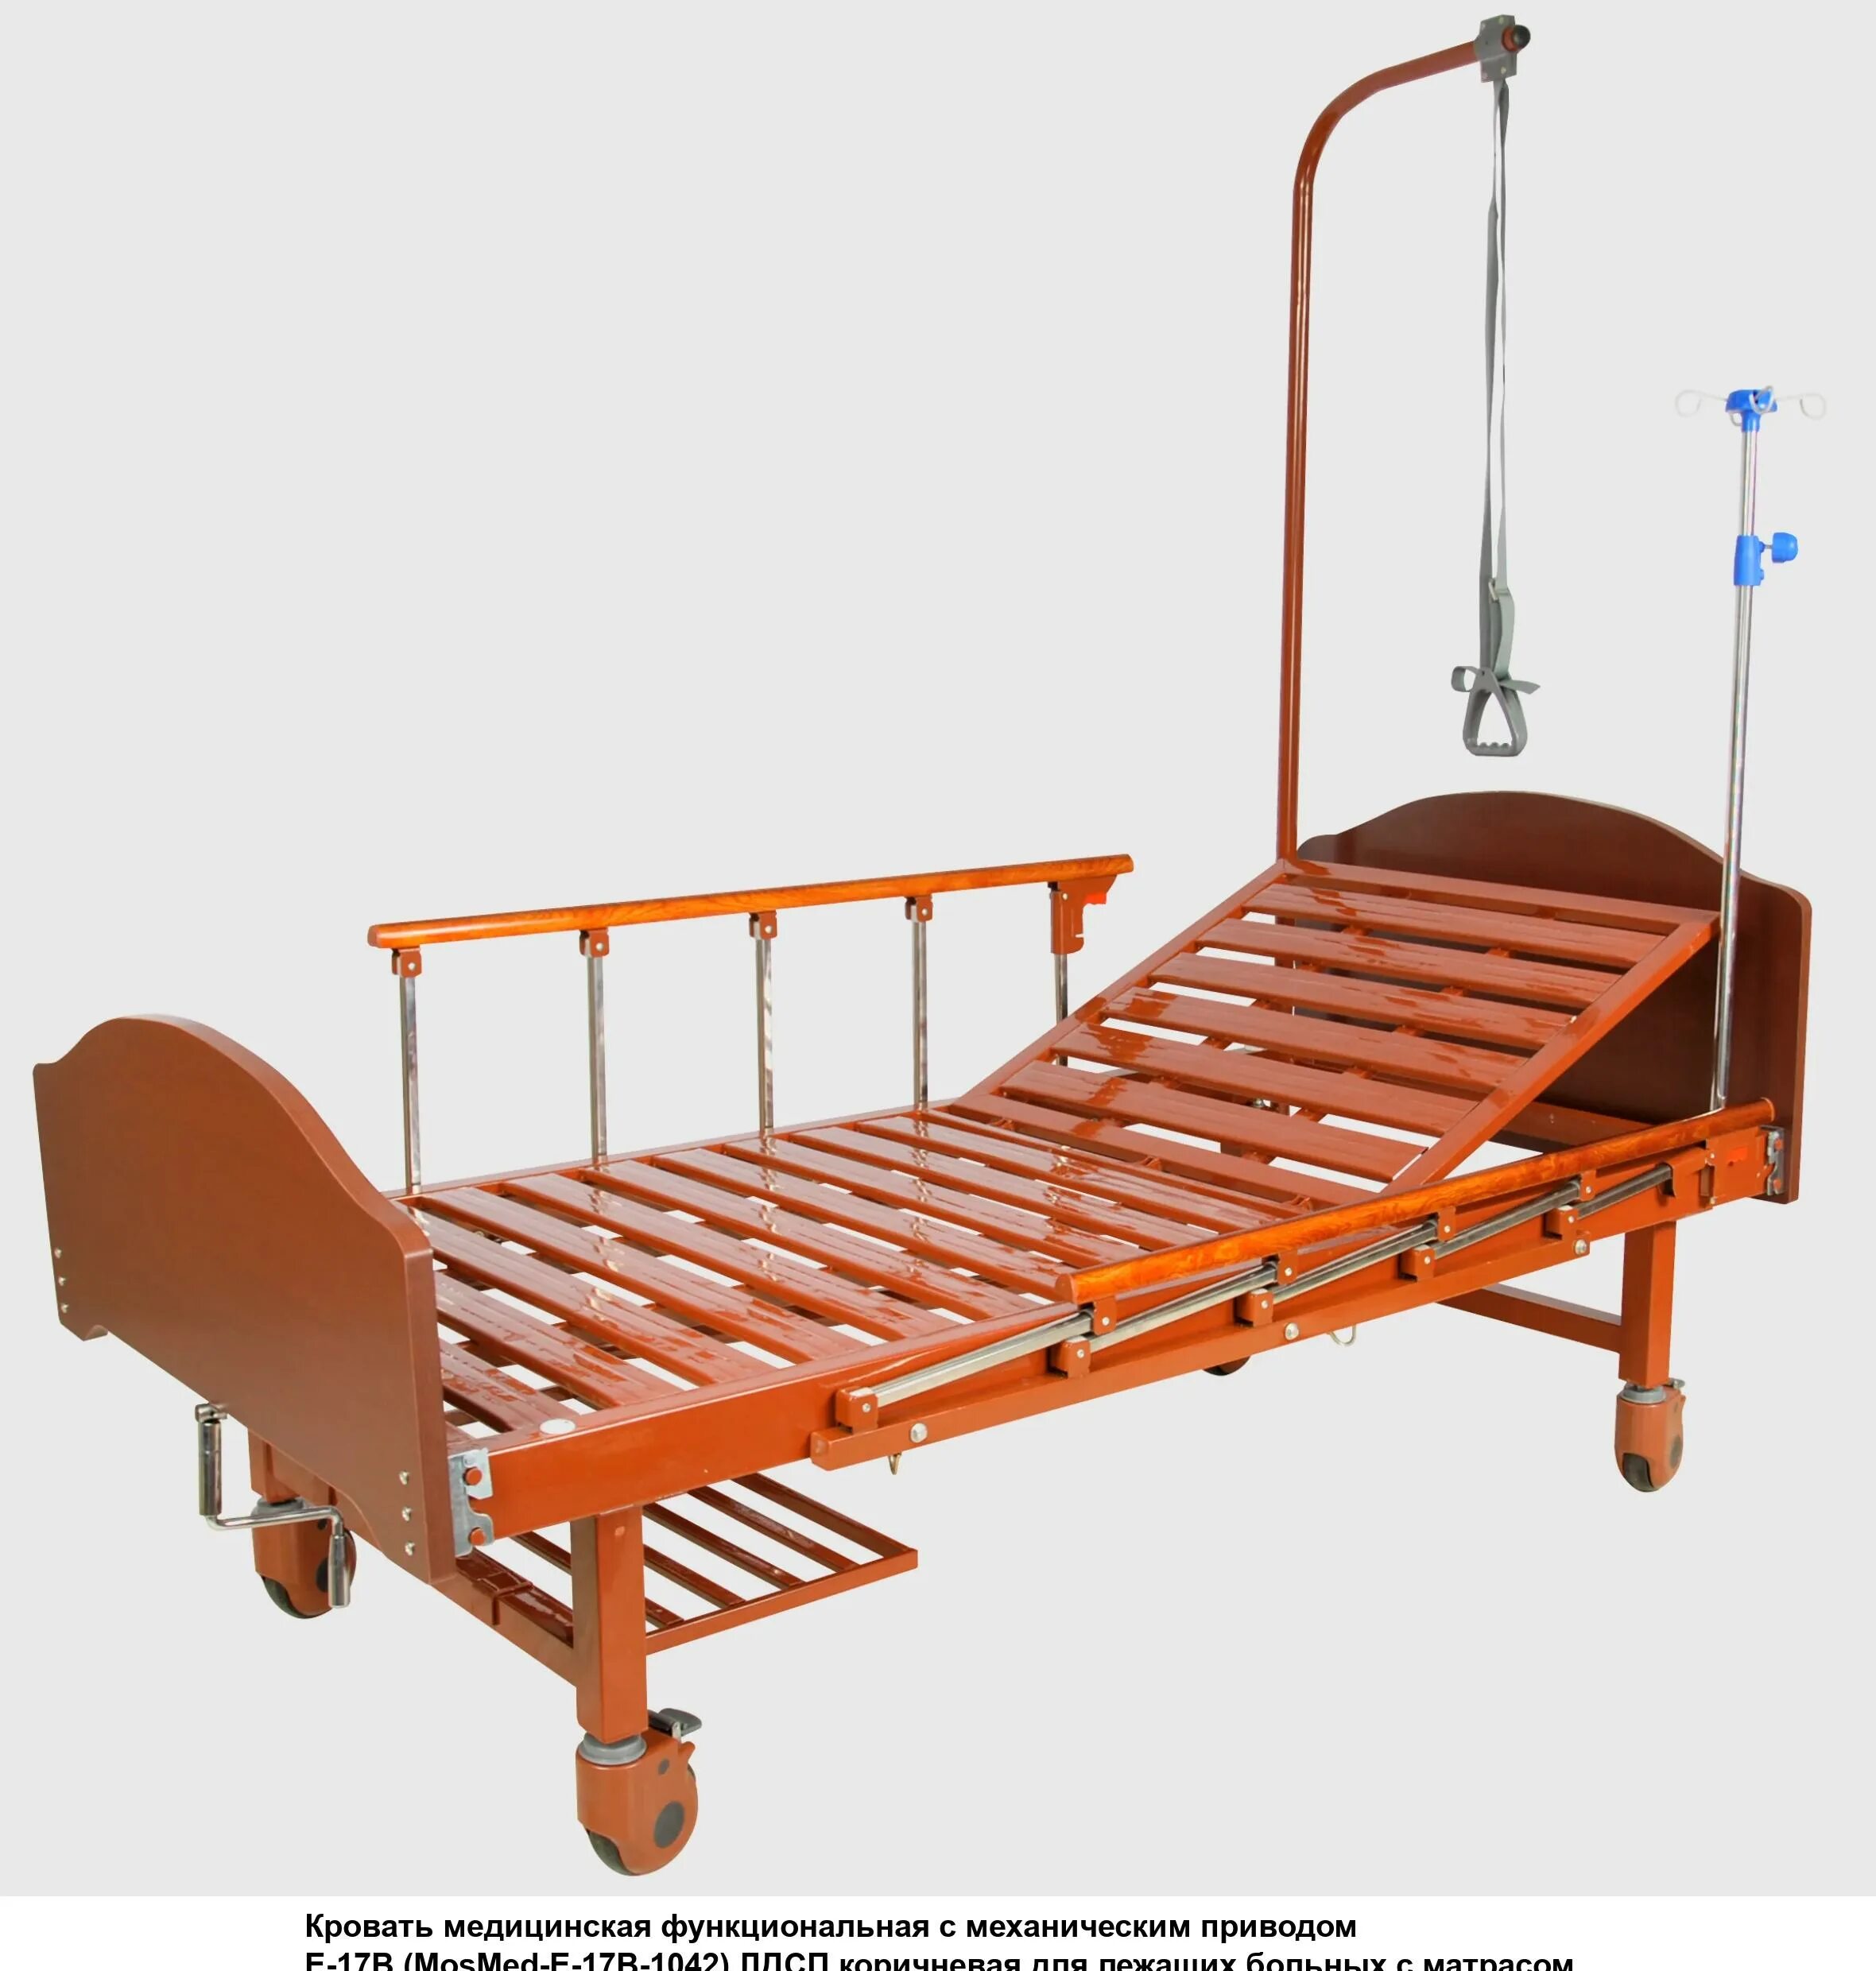 Кровать функциональная c механическим приводом e-17b. Кровать механическая med-mos. Кровать с механическим приводом Belberg 17b-1л. Кровать Армед rs105-b. Многофункциональная кровать для лежачих больных